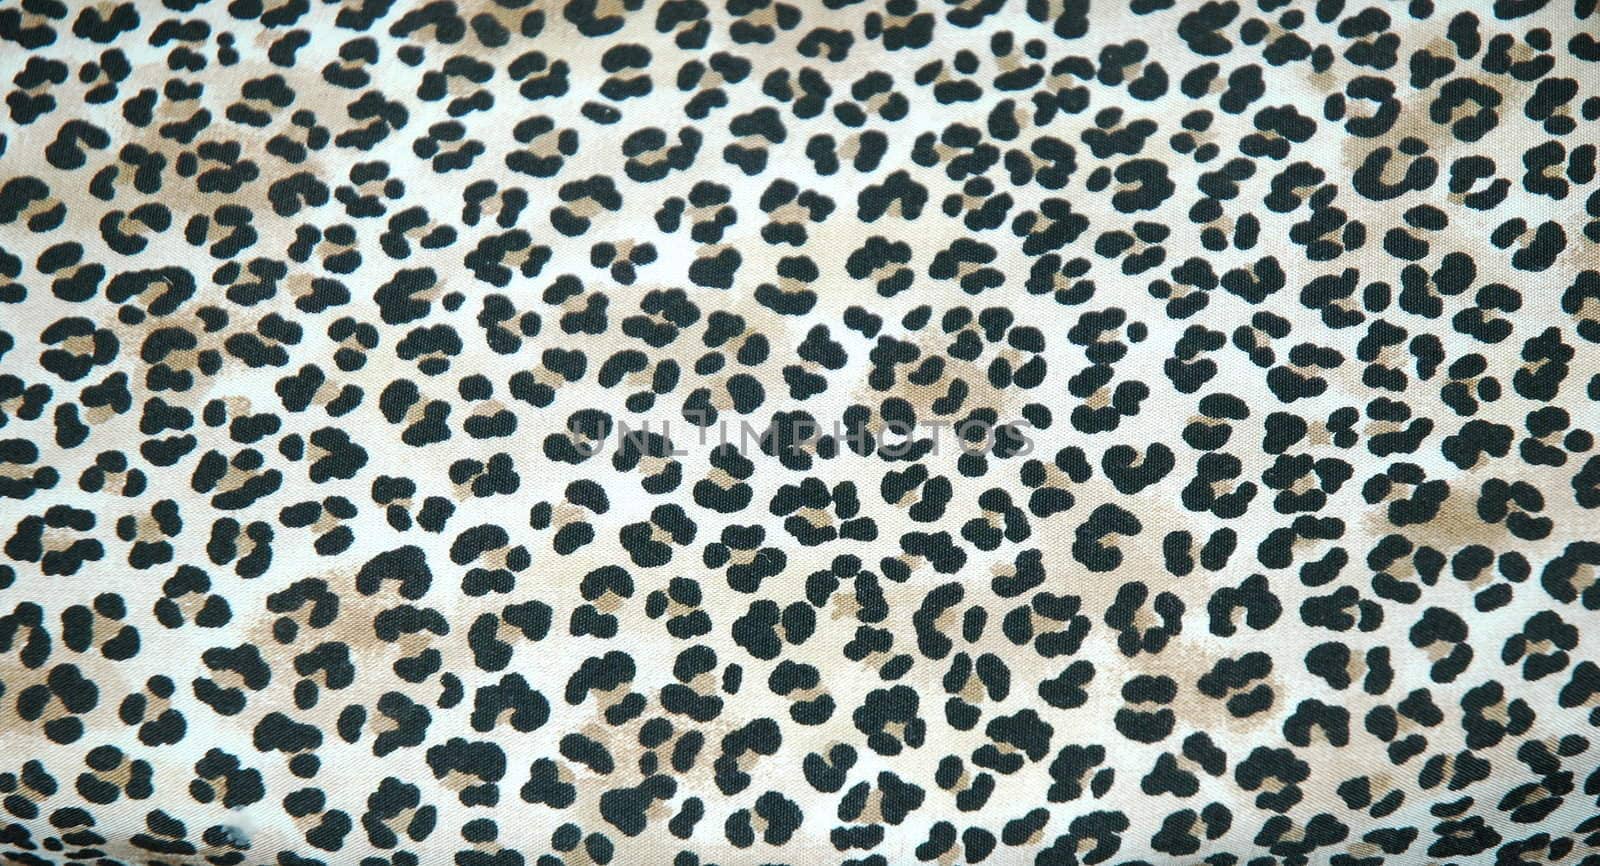 Leopard skin rug. by oscarcwilliams